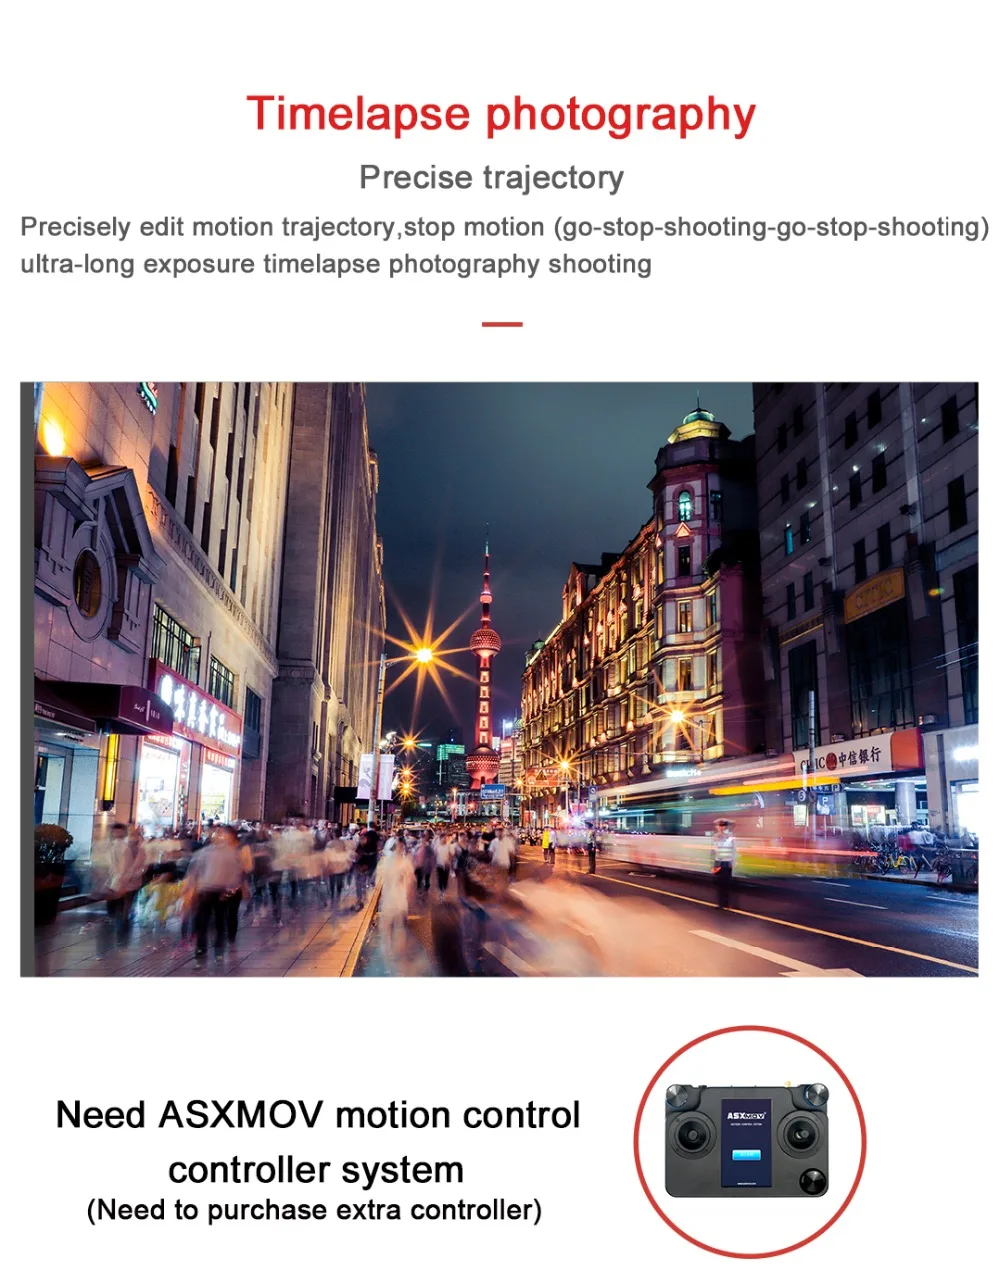 ASXMOV Феникс 4,5 кг Полезная нагрузка 3 оси ручной стабилизатор видео стабилизатор DSLR карданный стабилизатор без контроллера